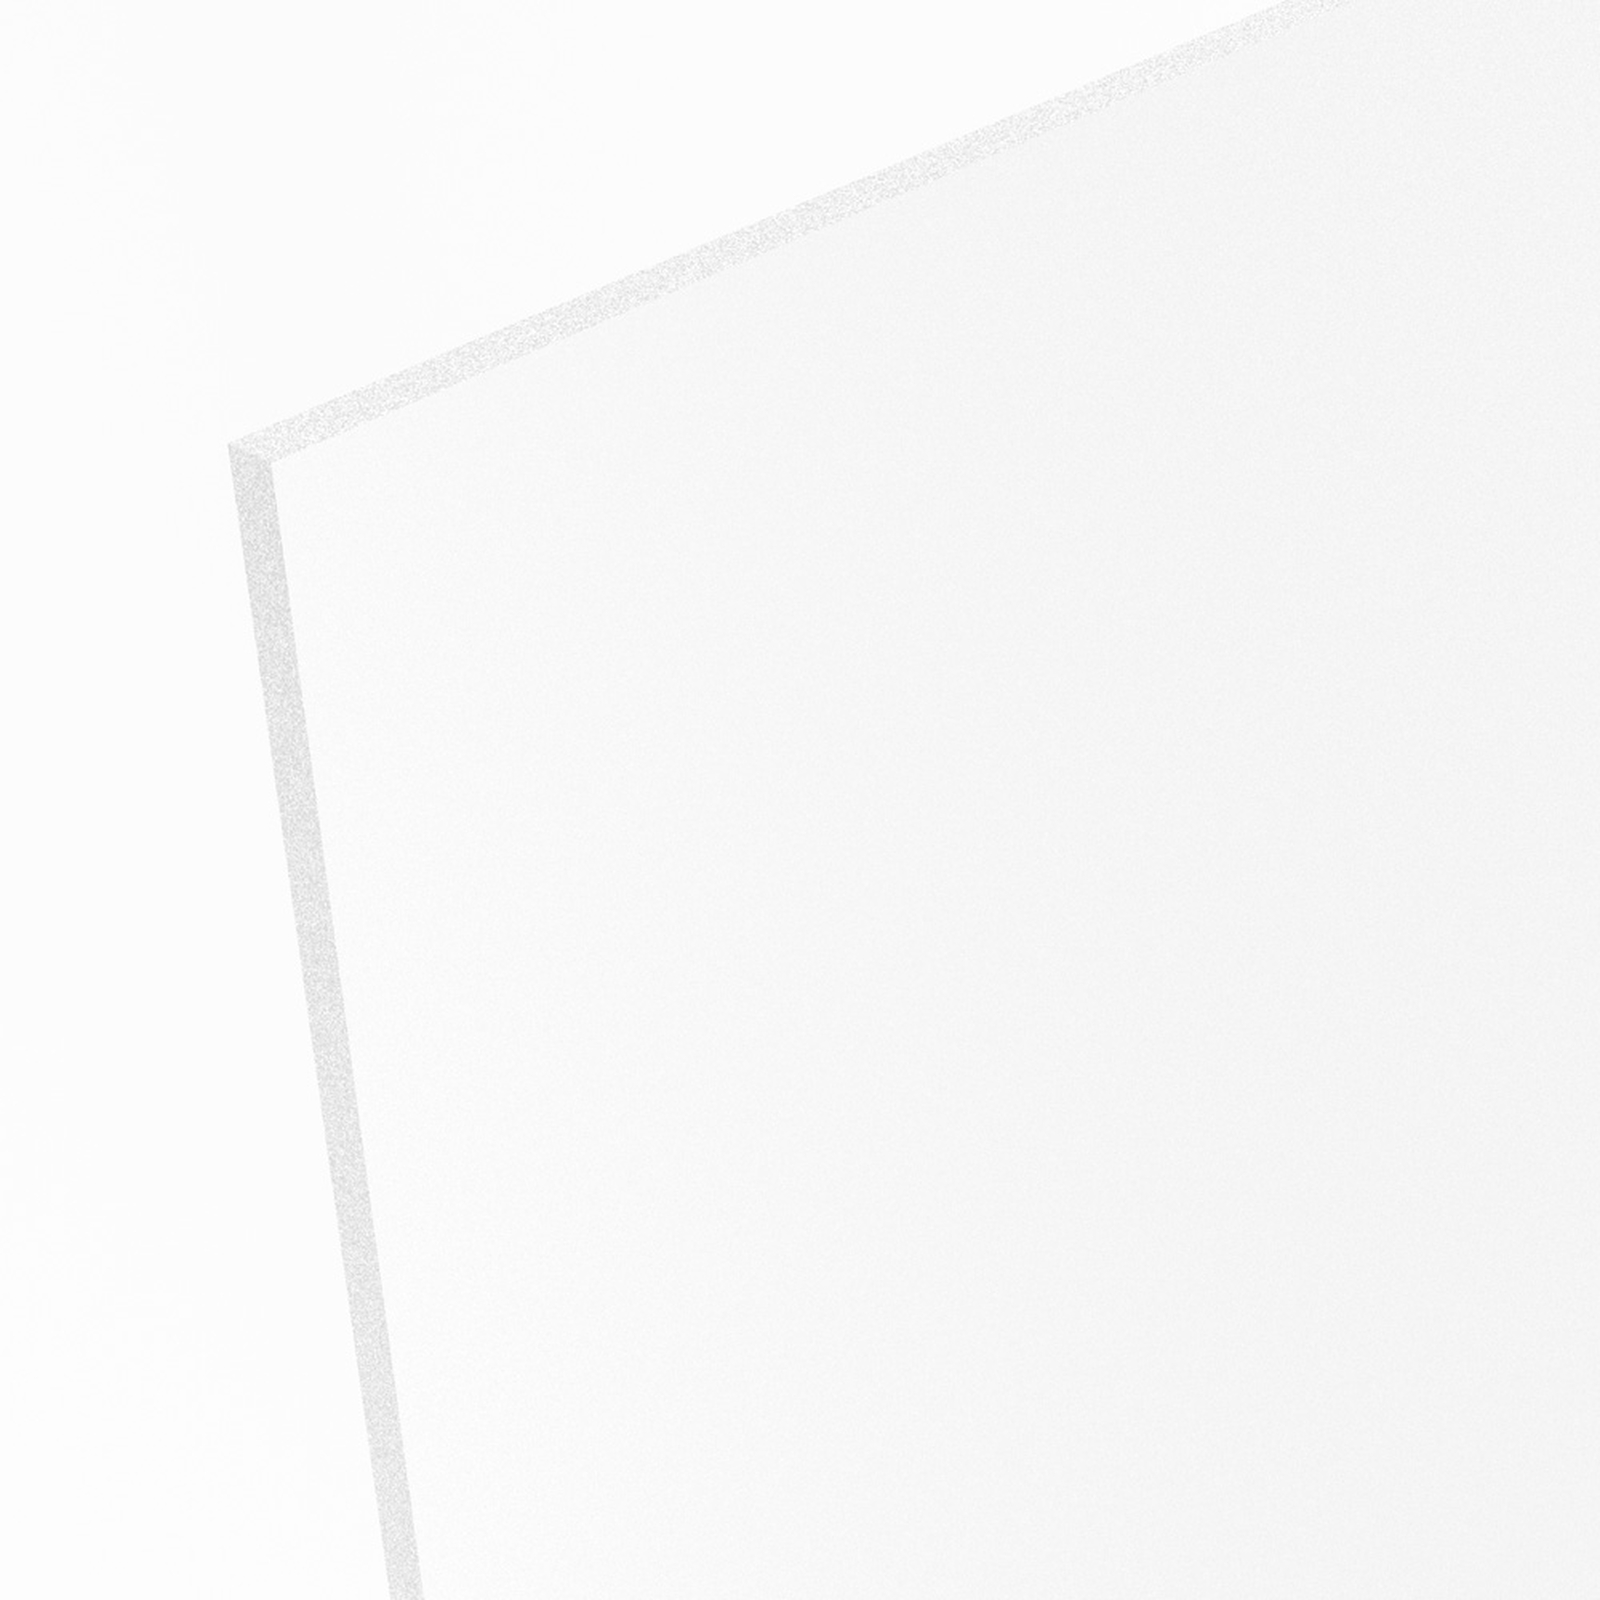 Qm 28,80 € PVC Hartschaum Platten Weiß 4 mm Wunschzuschnitt nach Maß Z 